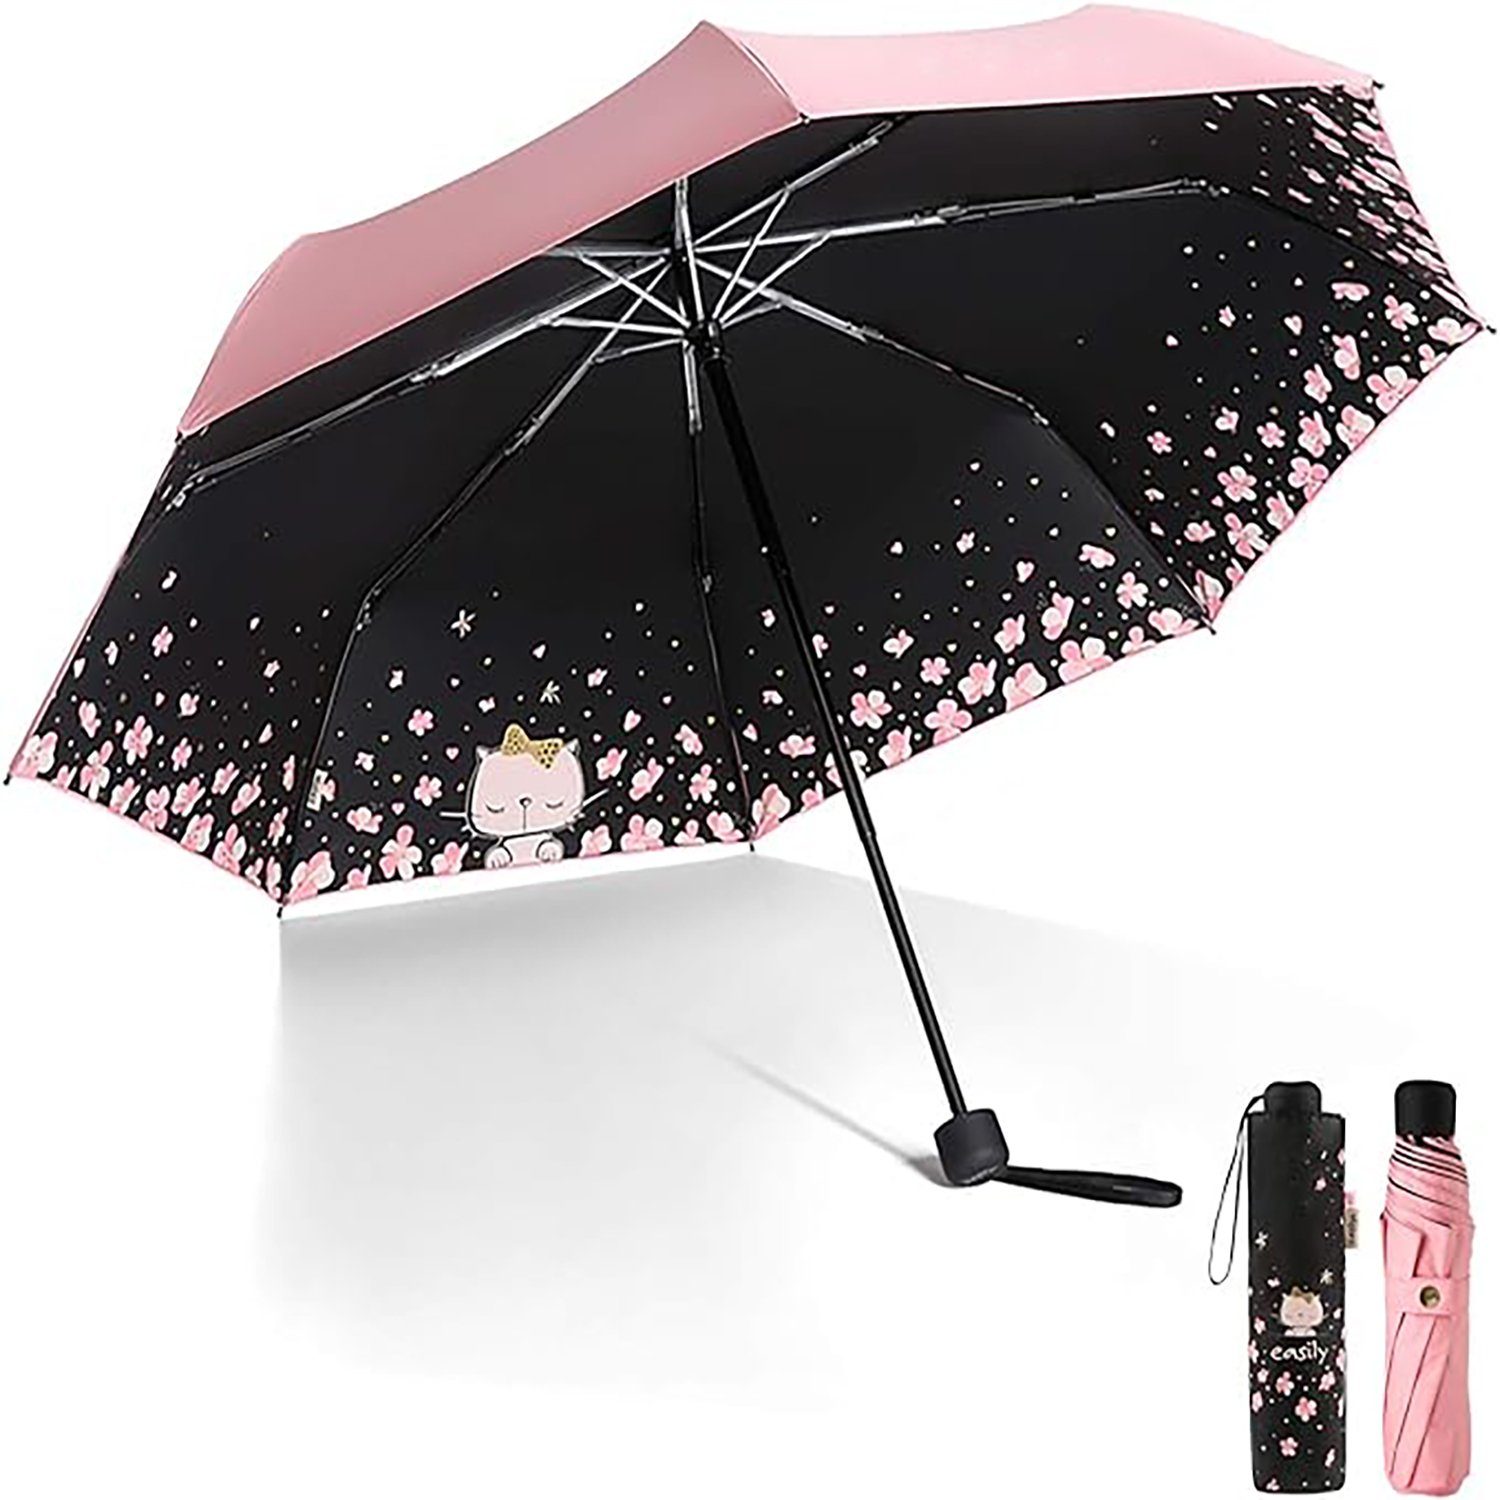 yozhiqu Sonnenschirm Kompakter und tragbarer Reise-Klappschirm mit UV-Schutz, UV-Schutz, kompakter faltbarer Regenschirm, ideal für unterwegs